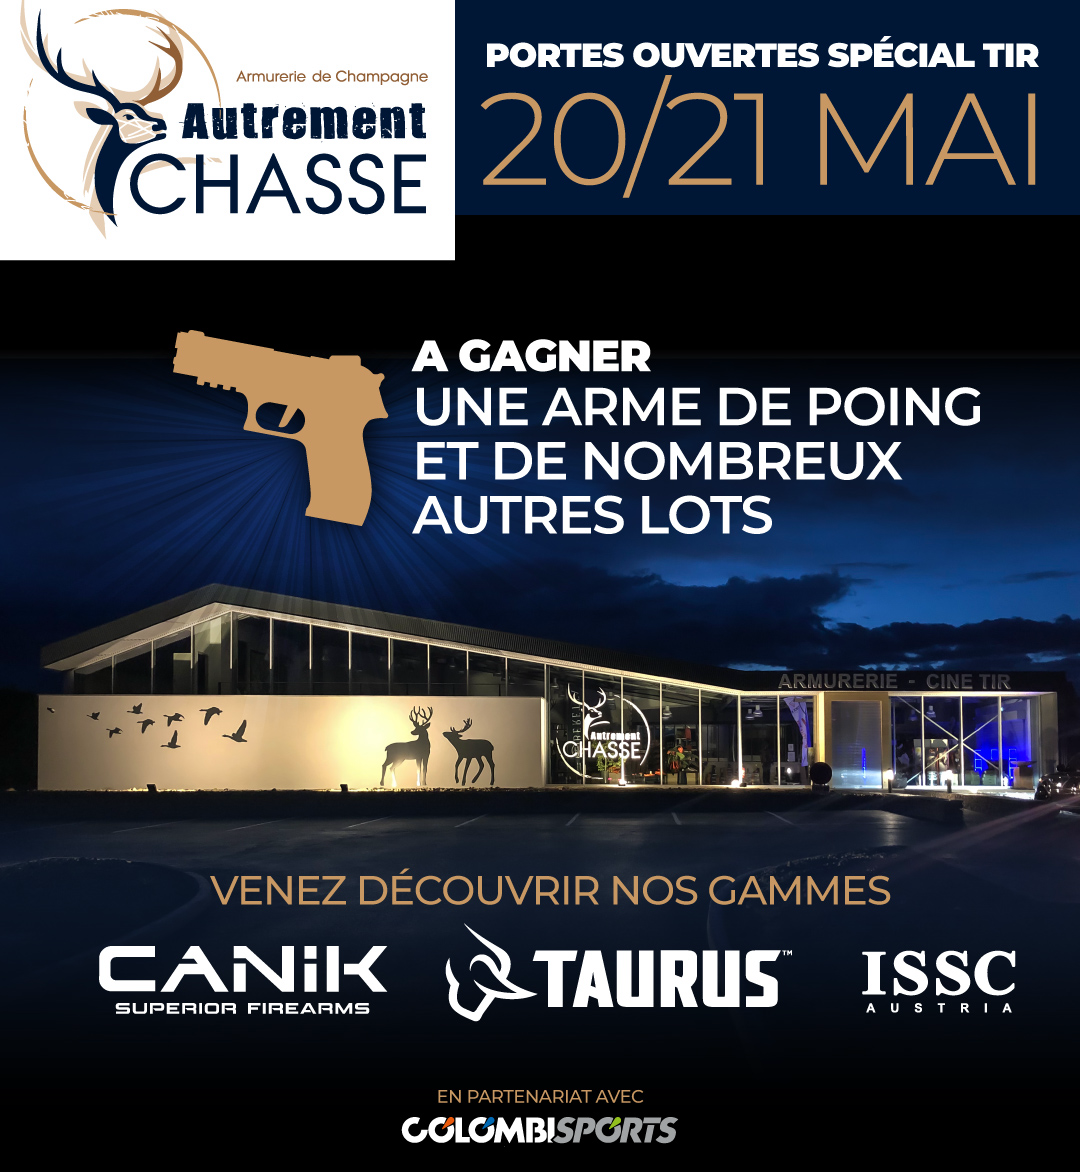 Evénement CANIK / TAURUS / ISSC les 20 et 21 Mai 2022 Autrement Chasse - Armurerie de Champagne